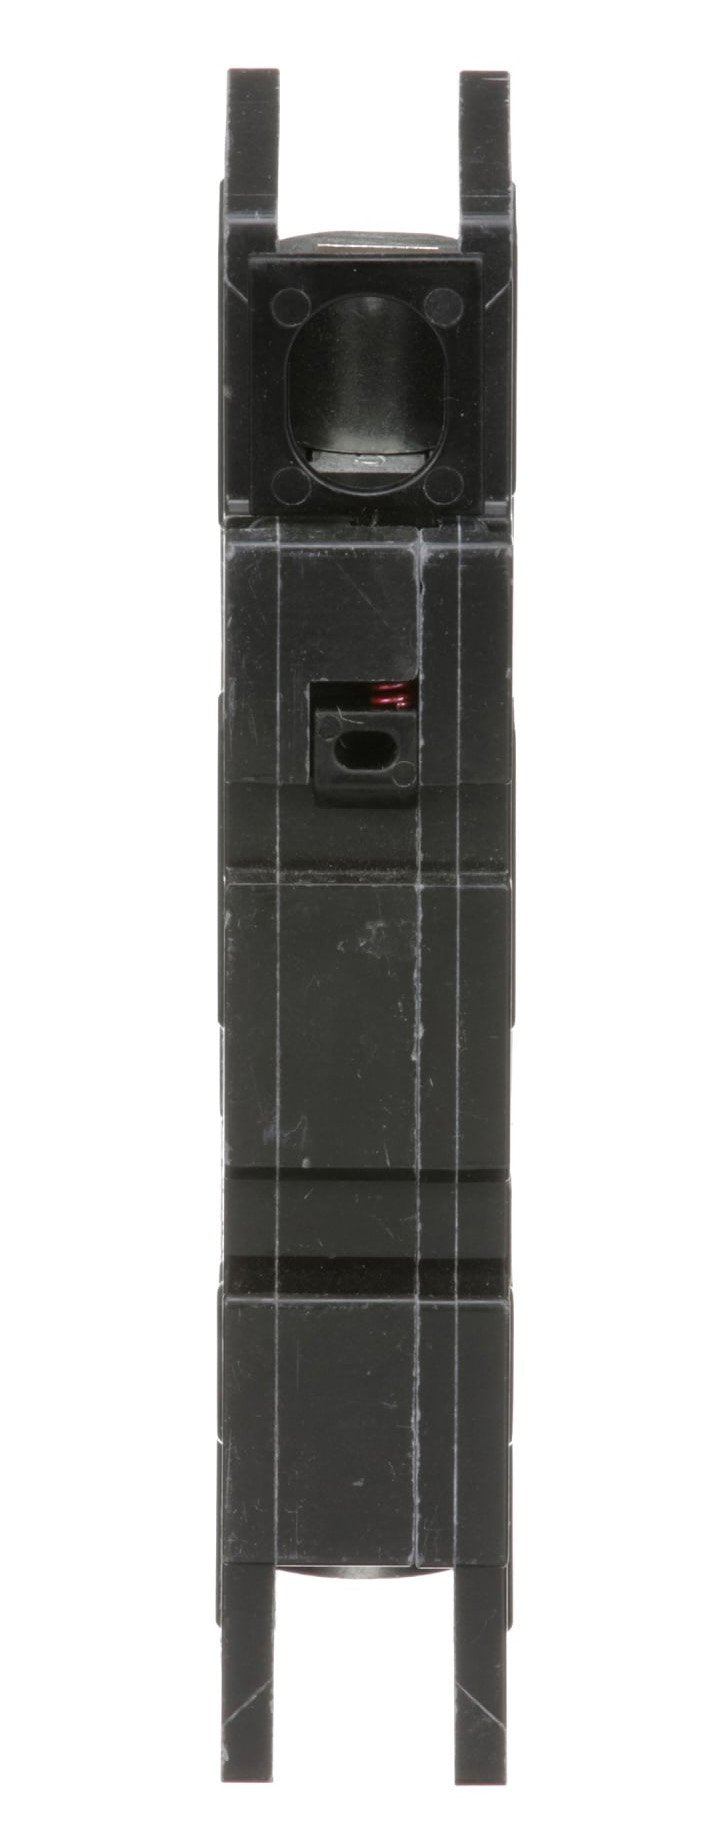 QOU130 - Square D - 30 Amp Circuit Breaker